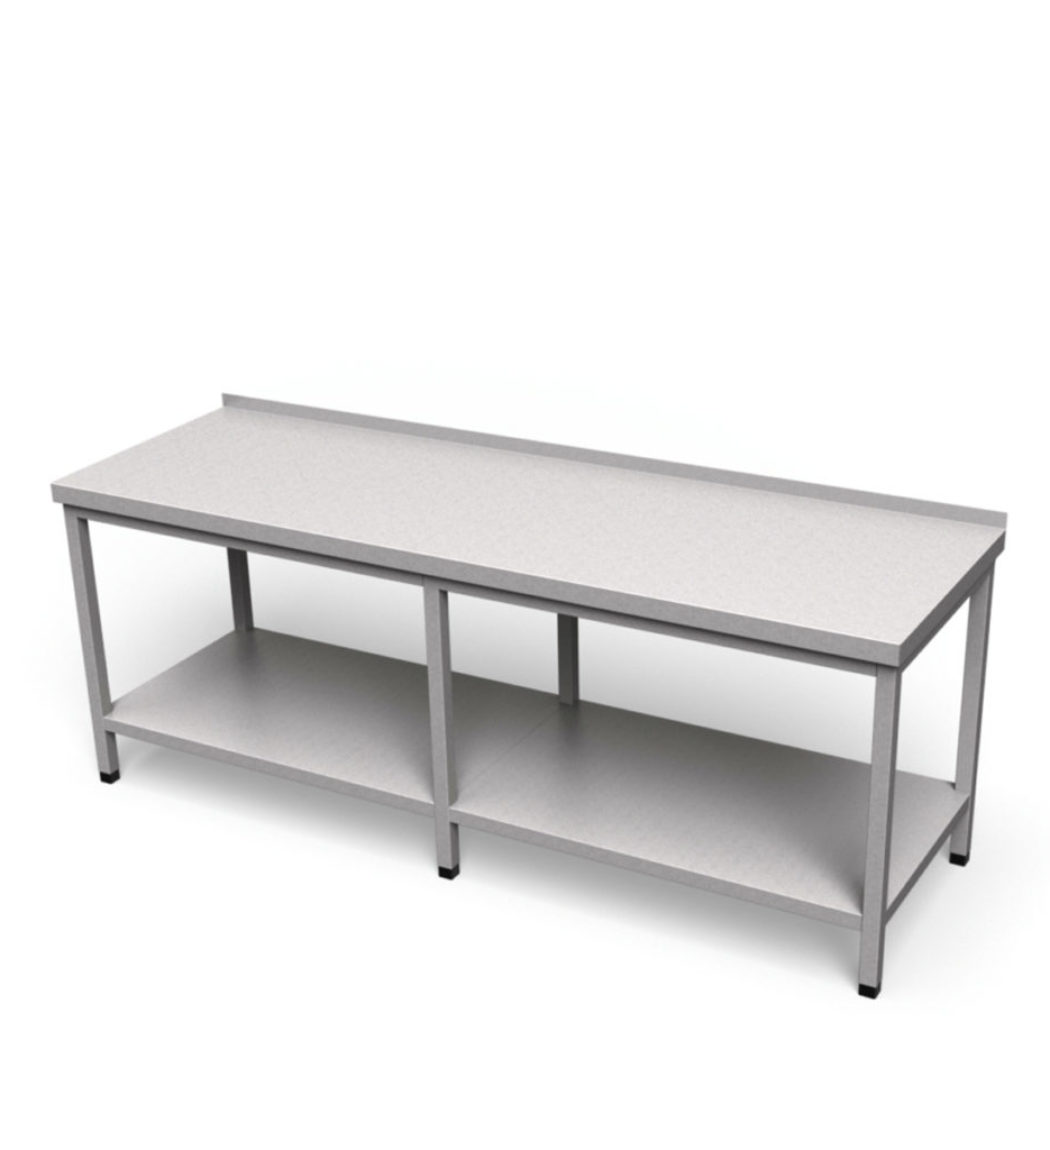 Nerezový pracovný stôl s policou dlhý | SJV-2